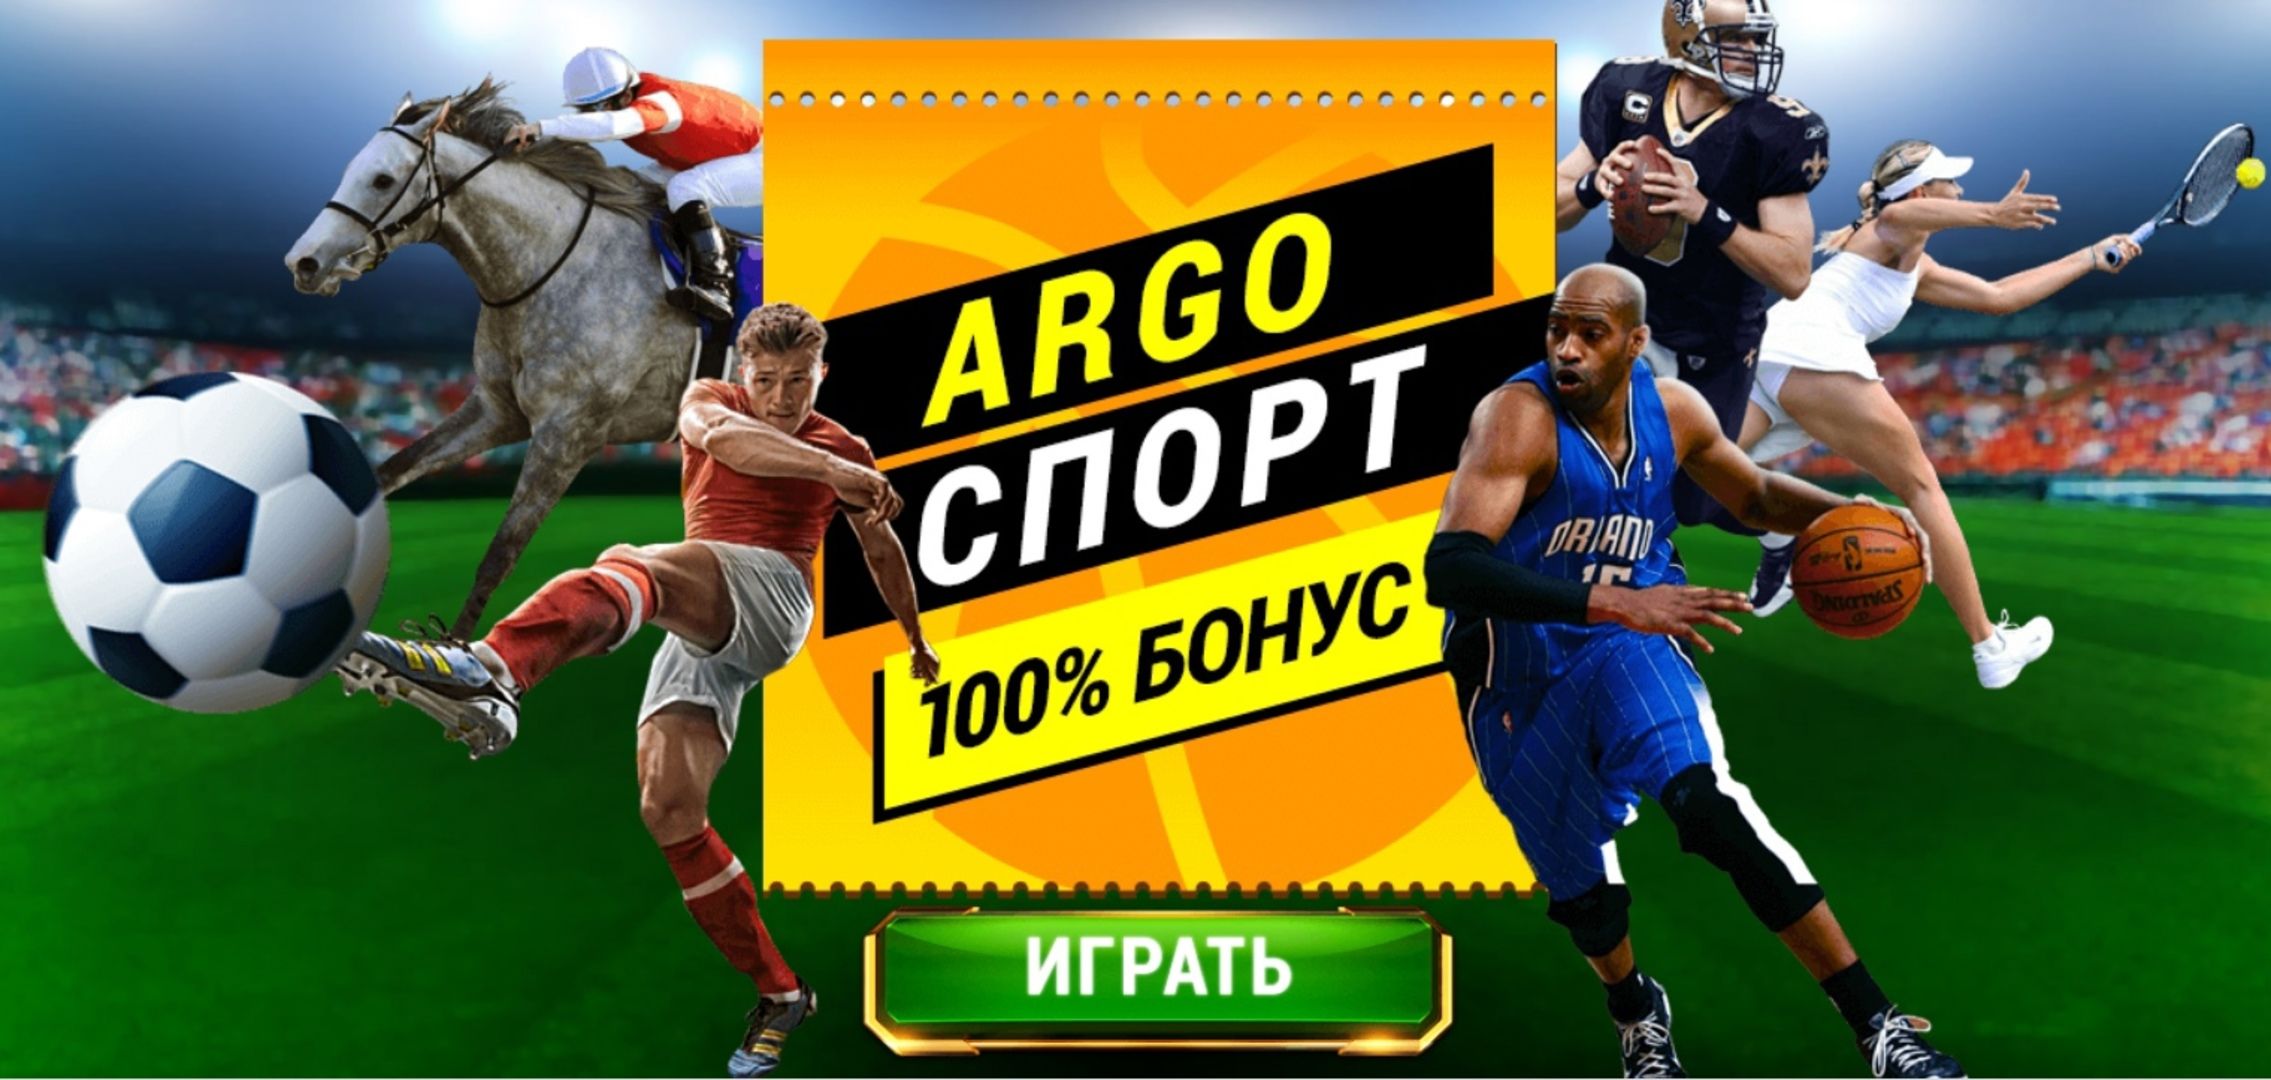 Argo Sport предлагает 100% бонус на спортивные ставки в размере первого депозита